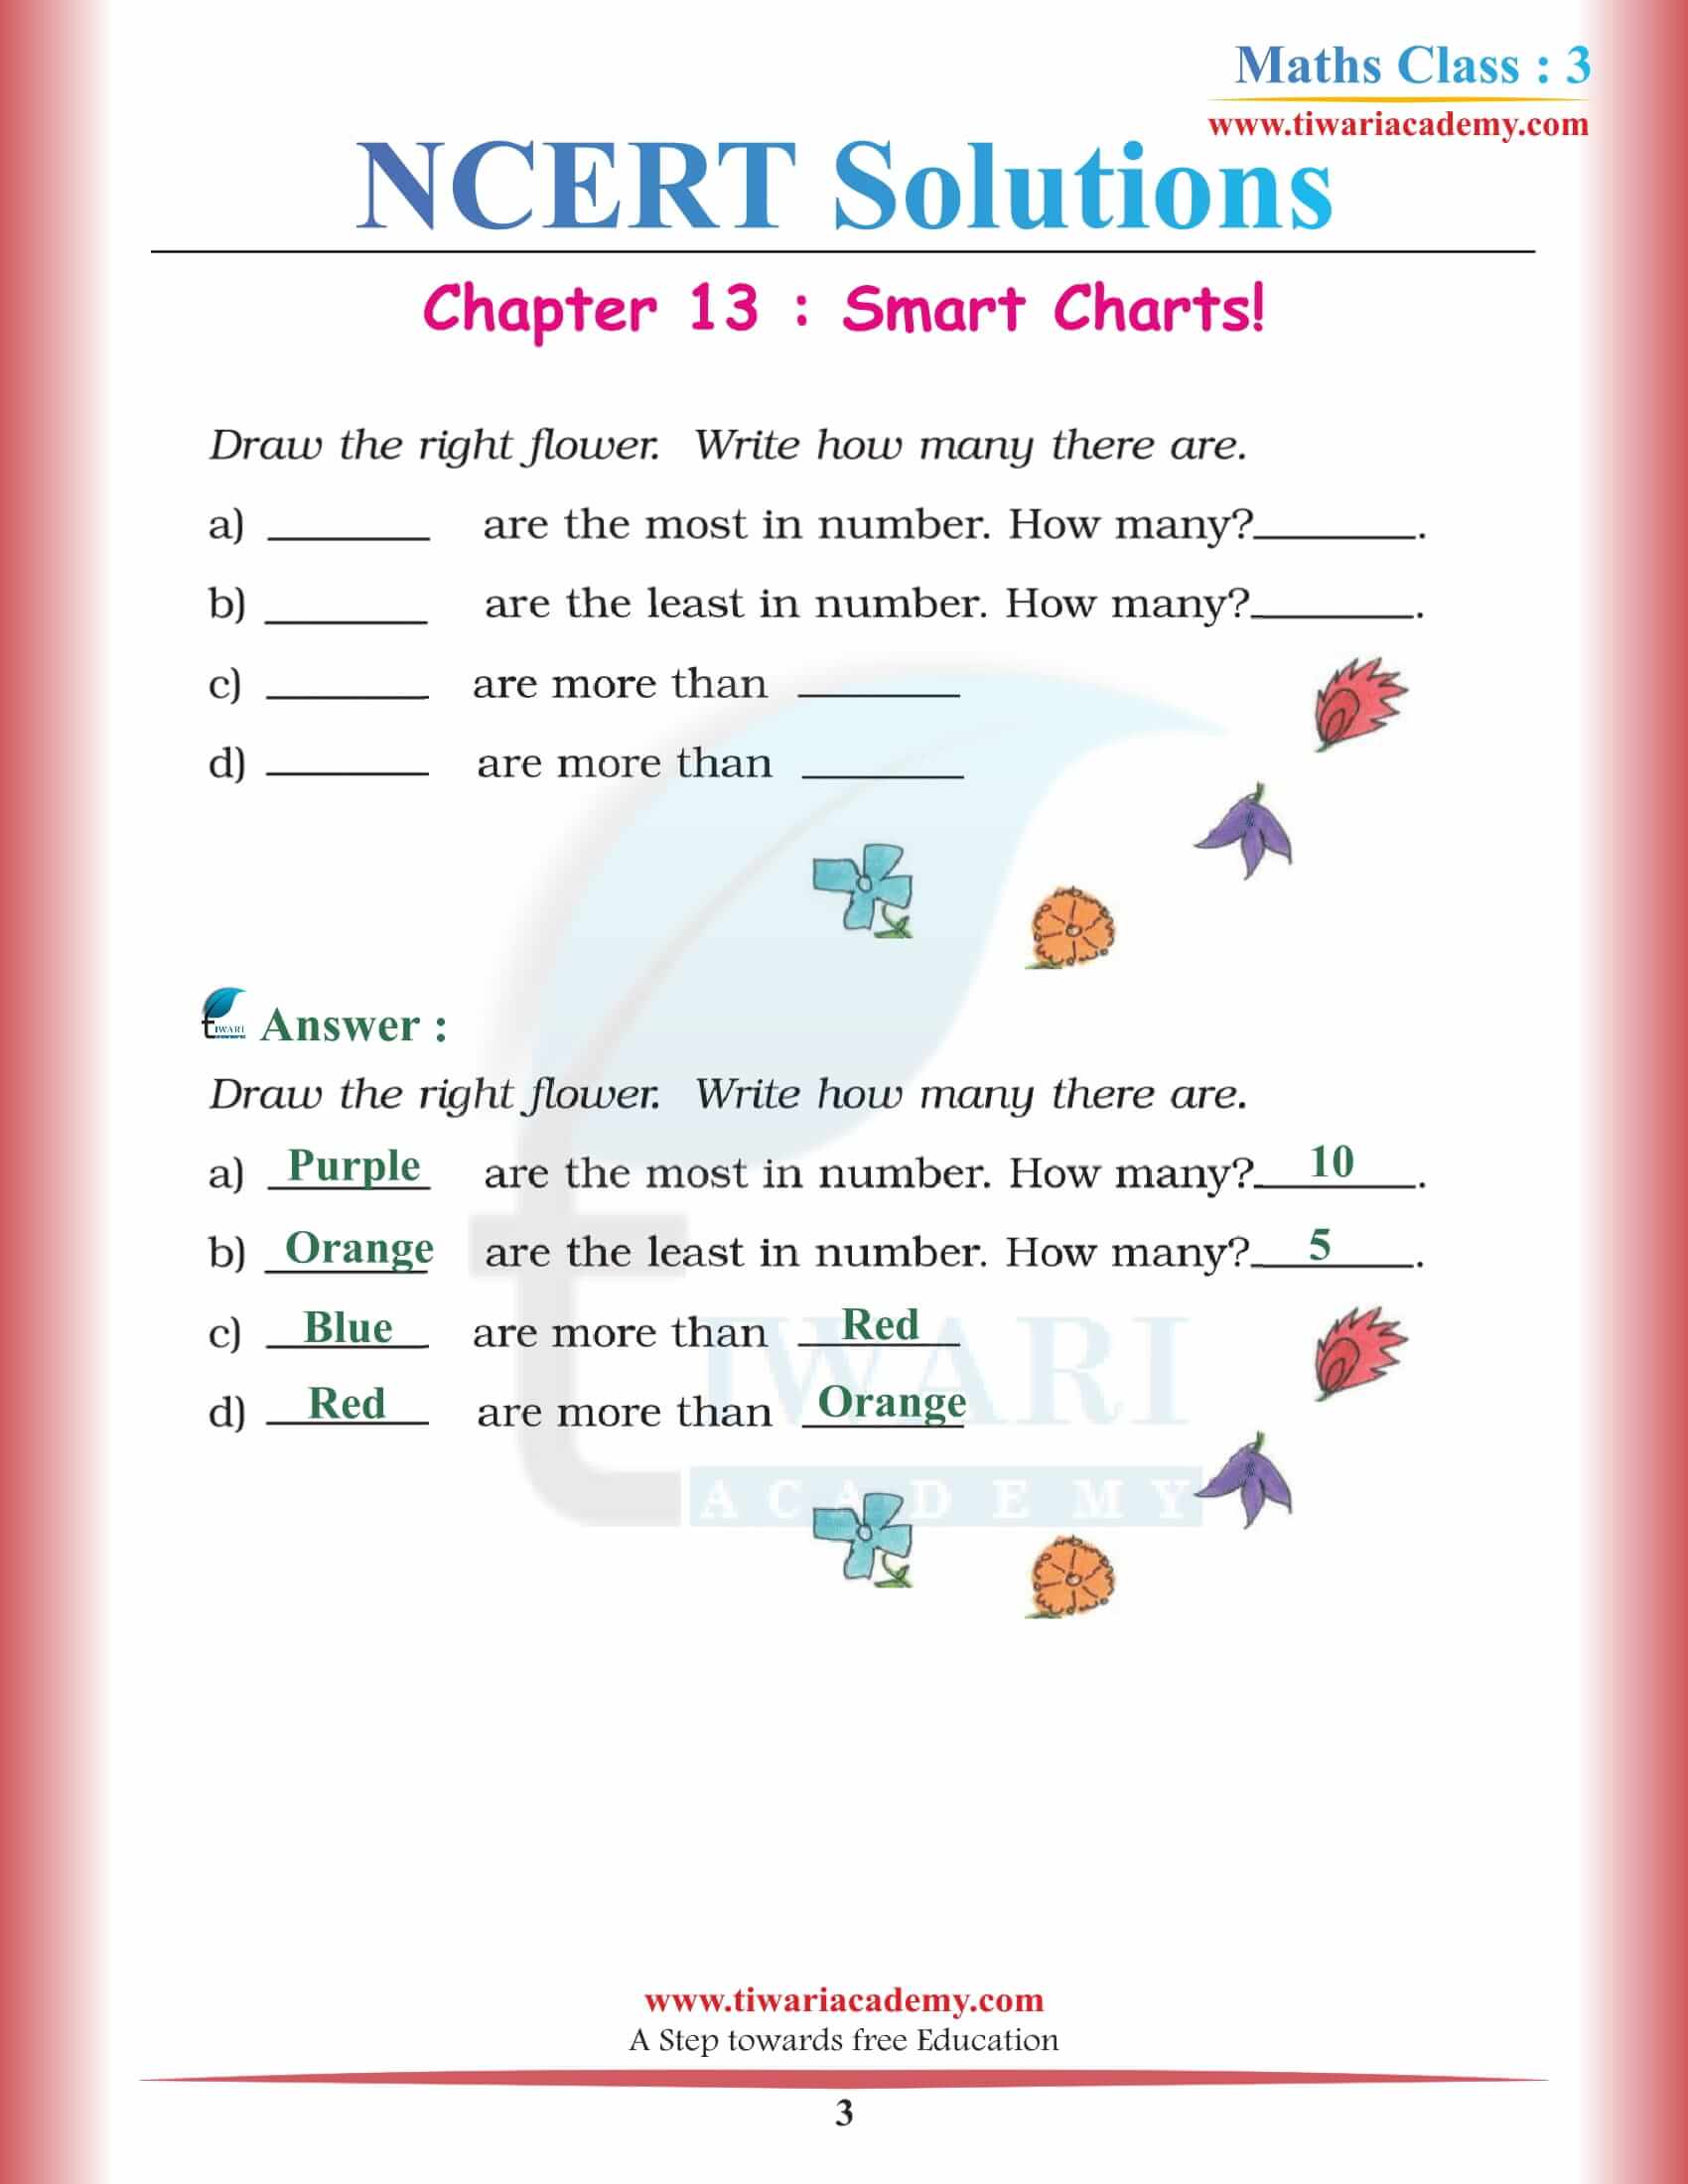 NCERT Solutions for Class 3 Maths Chapter 13